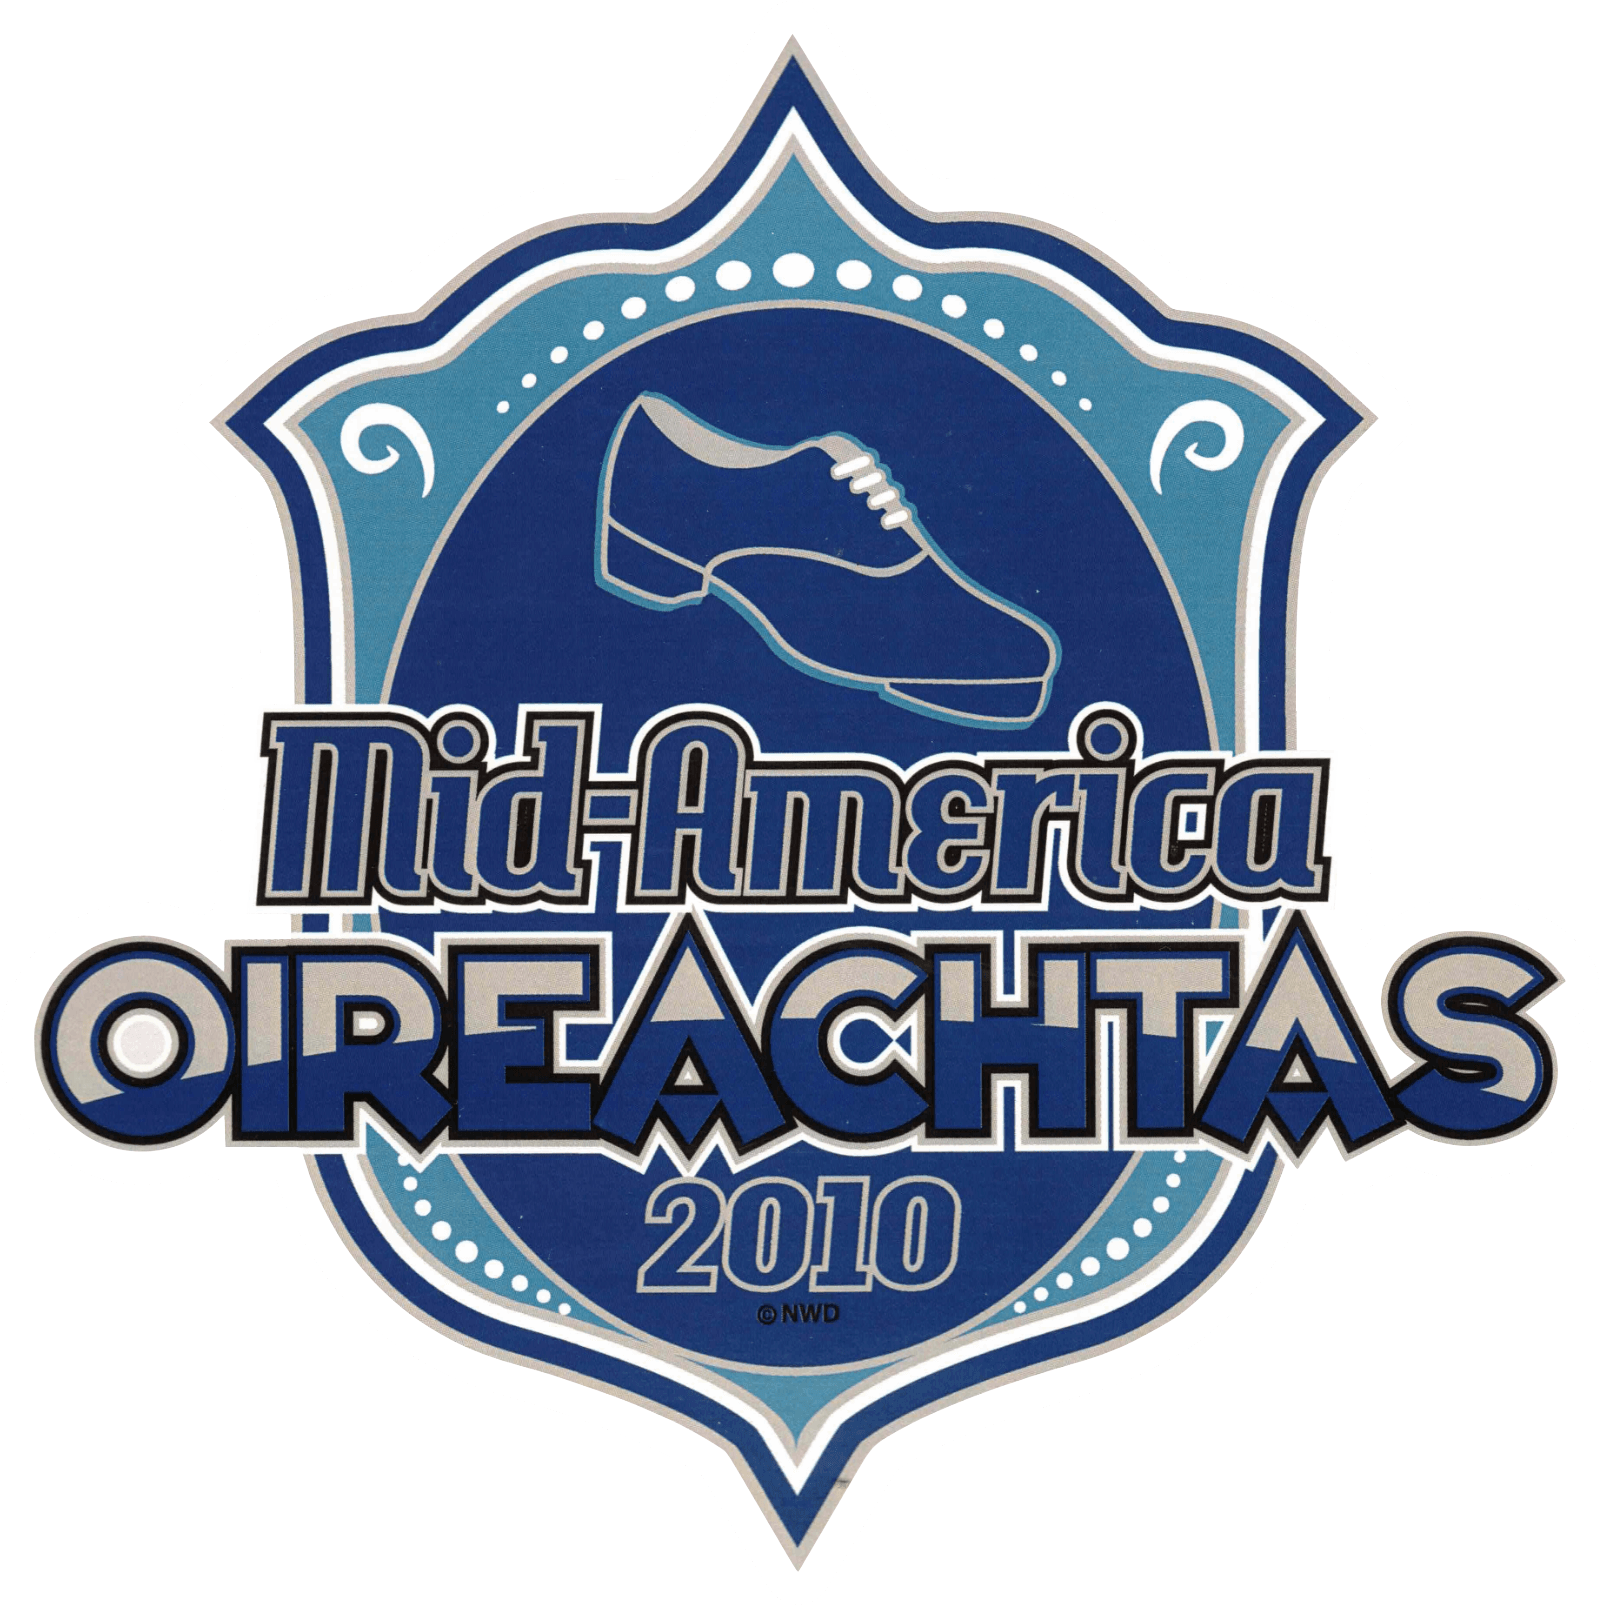 logo for Mid America Oireachtas